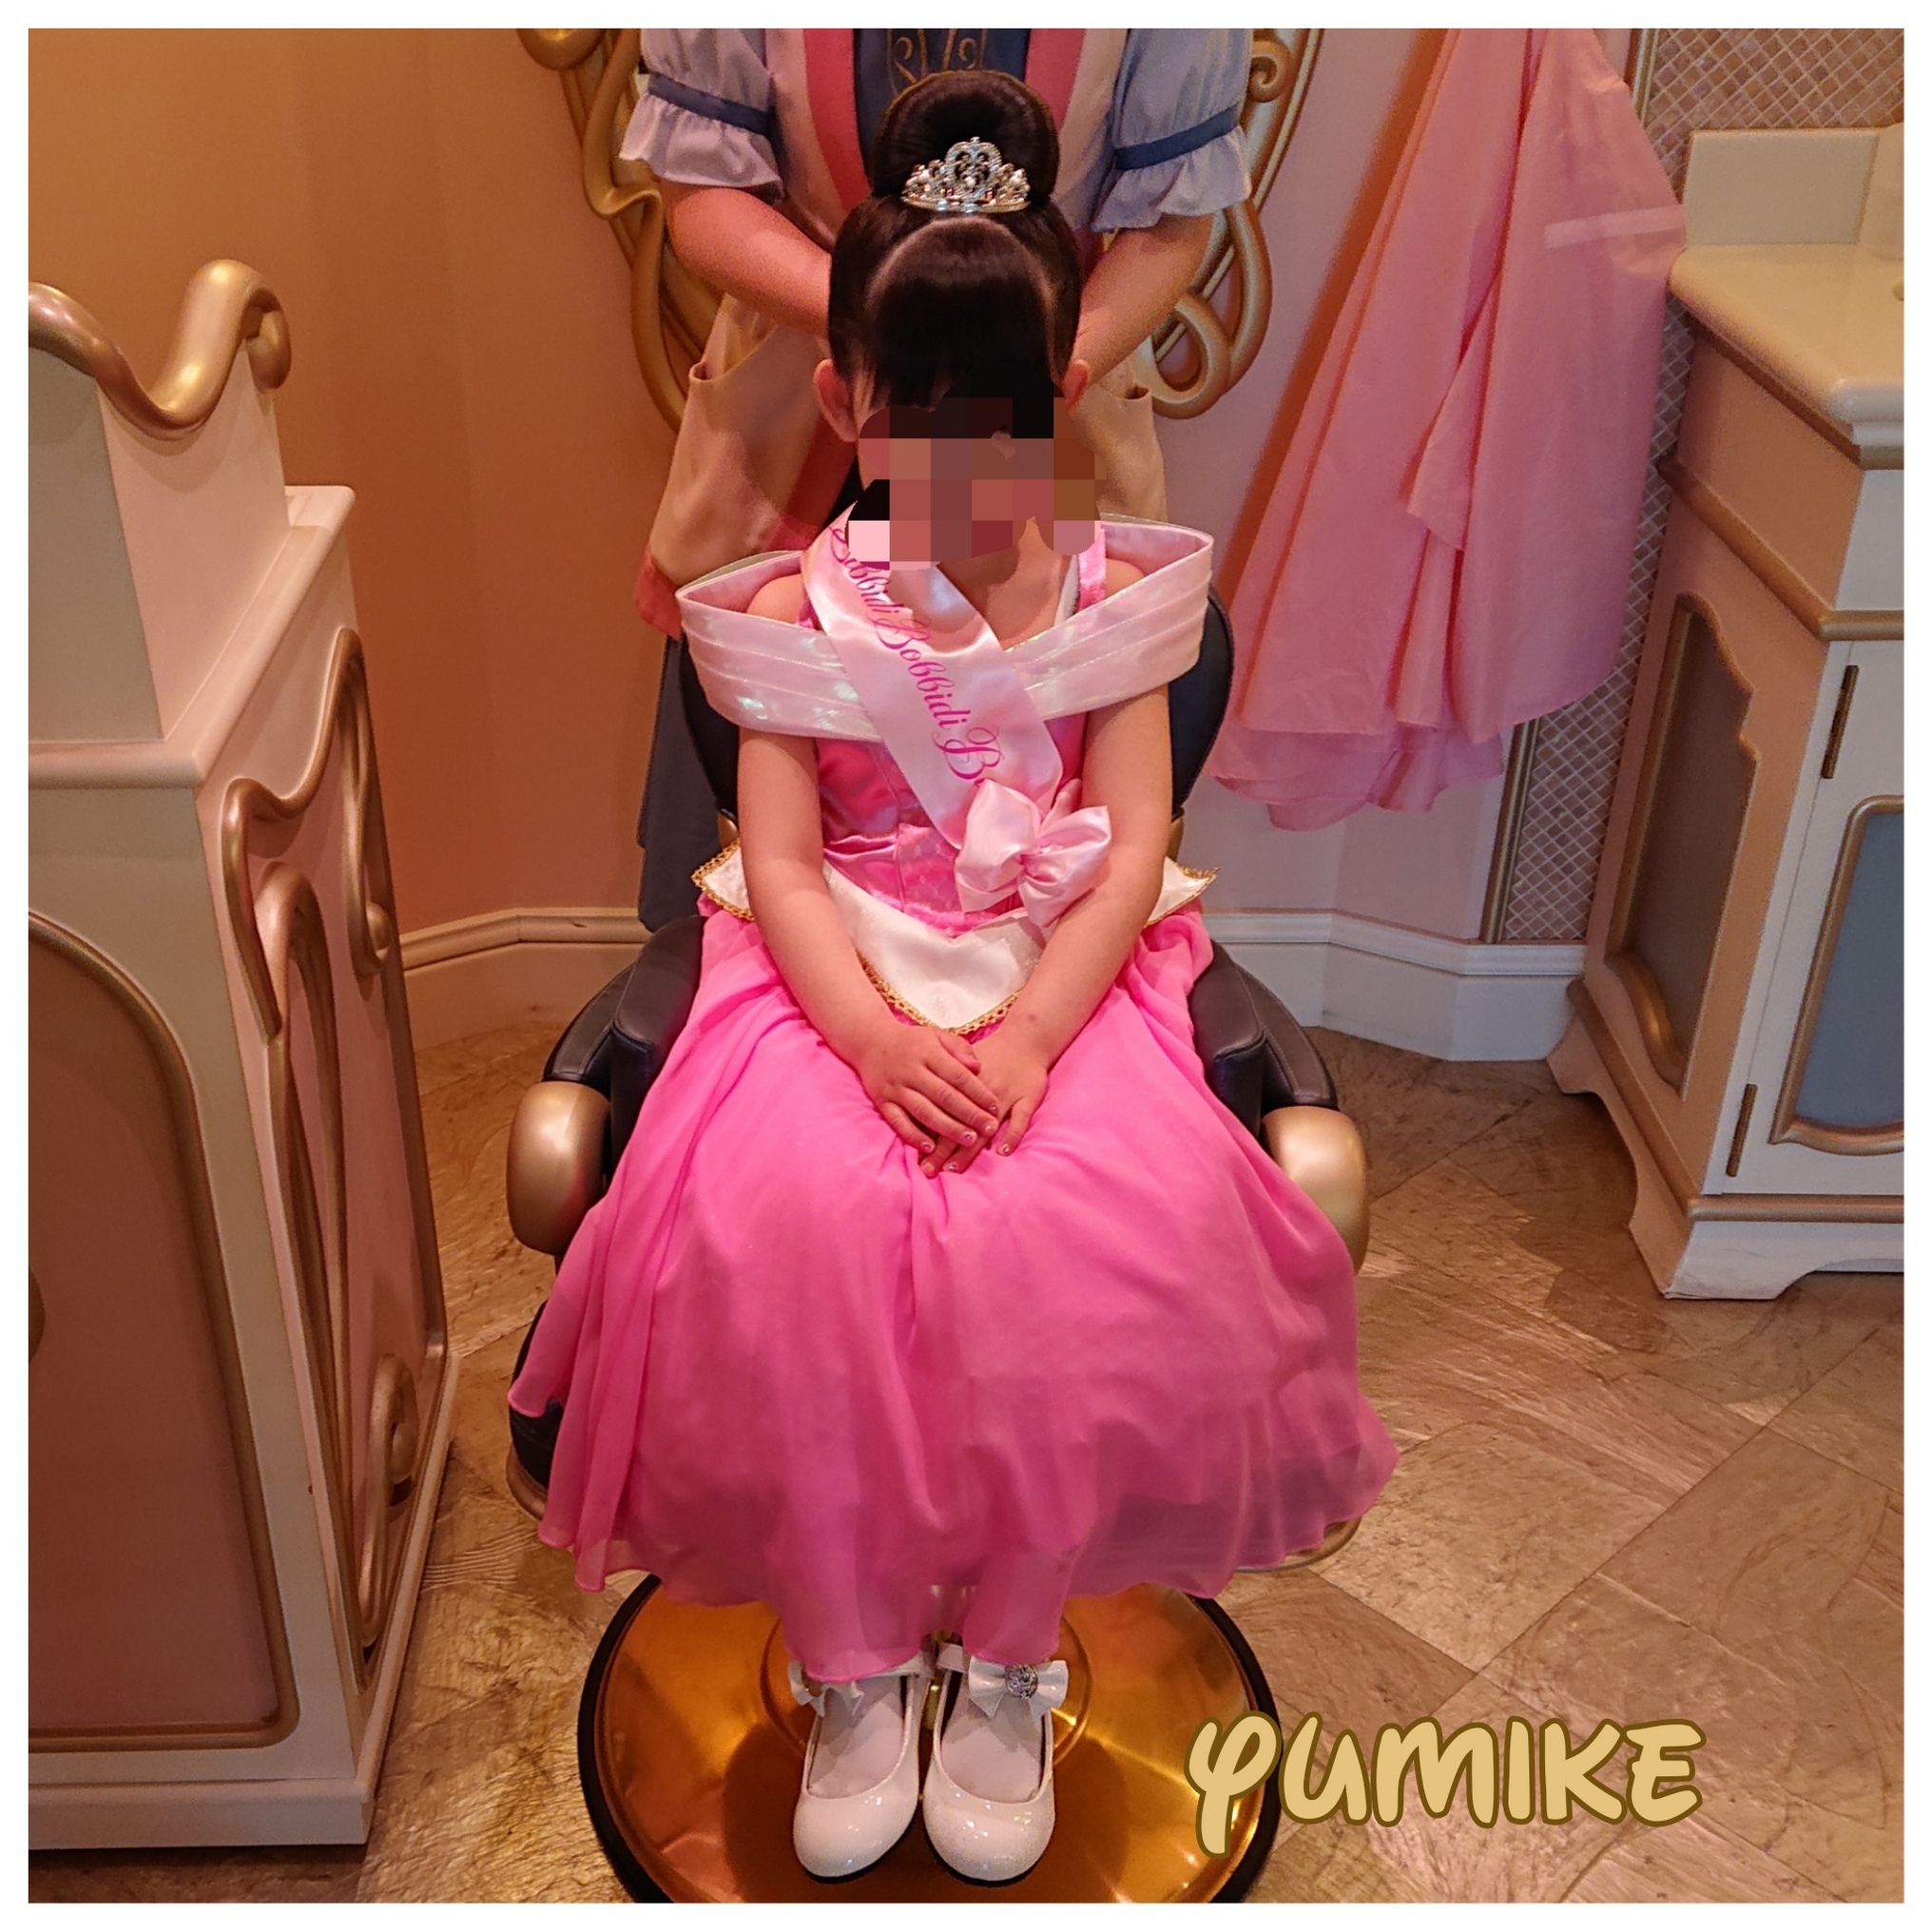 ビビディ・バビディ・ブティック購入 オーロラ姫ドレス 120cm ピンク